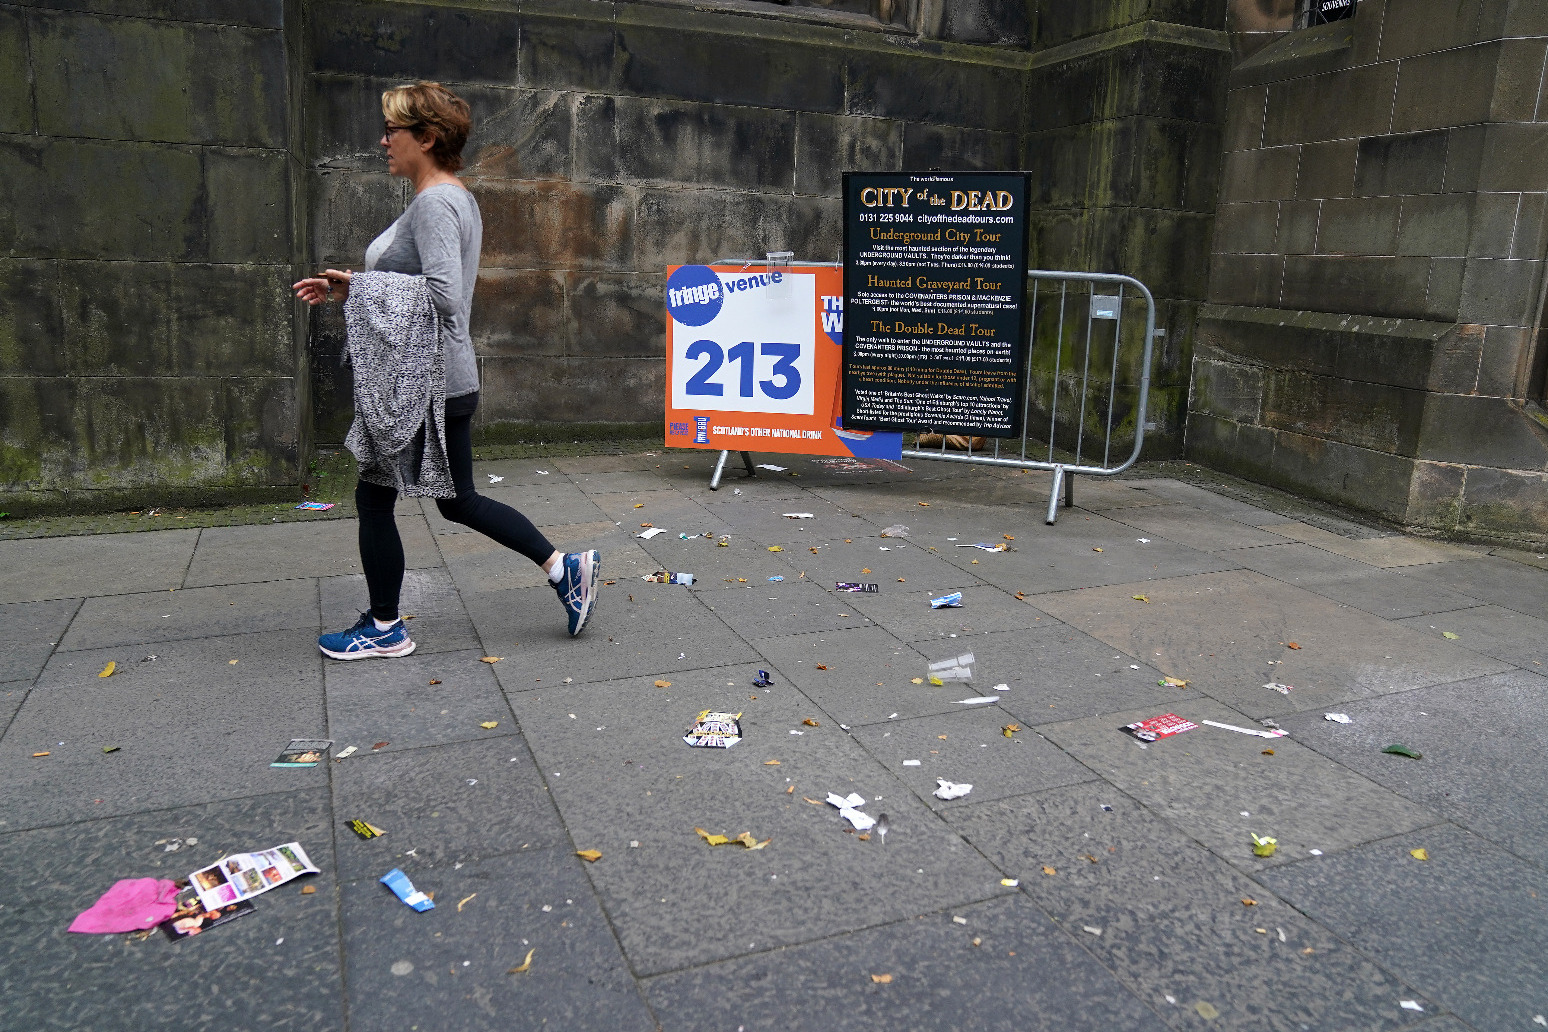 Edinburgh waste workers ‘very angry’ as strike begins across the city 